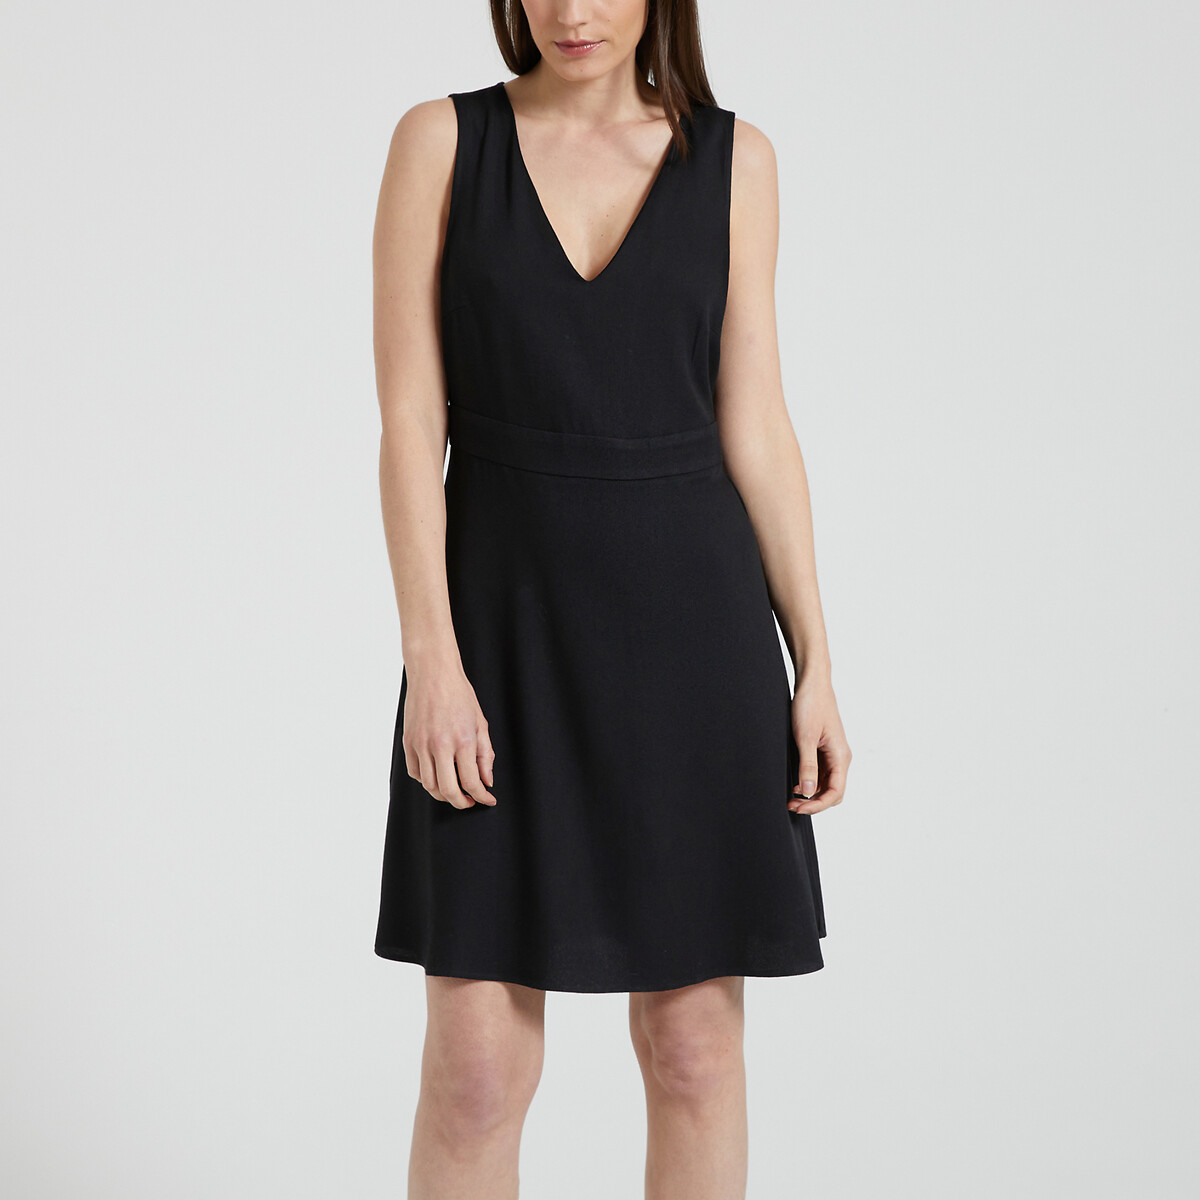 Платье короткое со спинкой из кружева  46 черный LaRedoute, размер 46